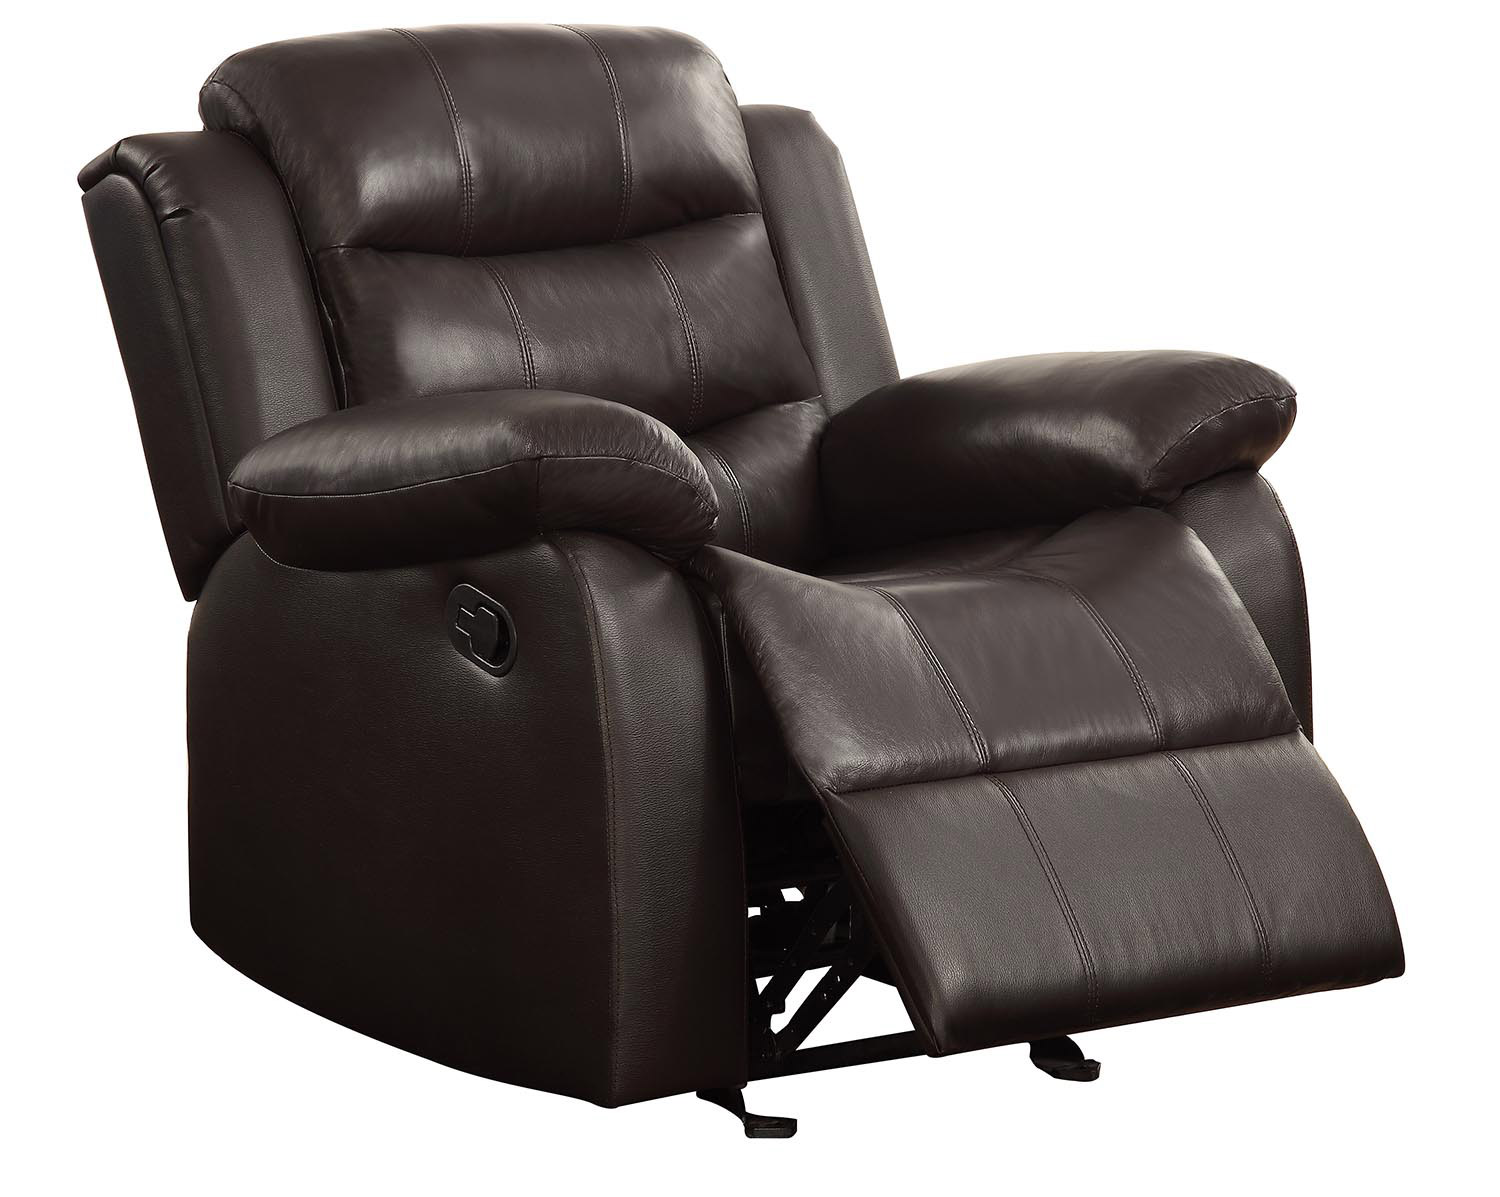 Coaster Rodman Motion Chair - Dark brown